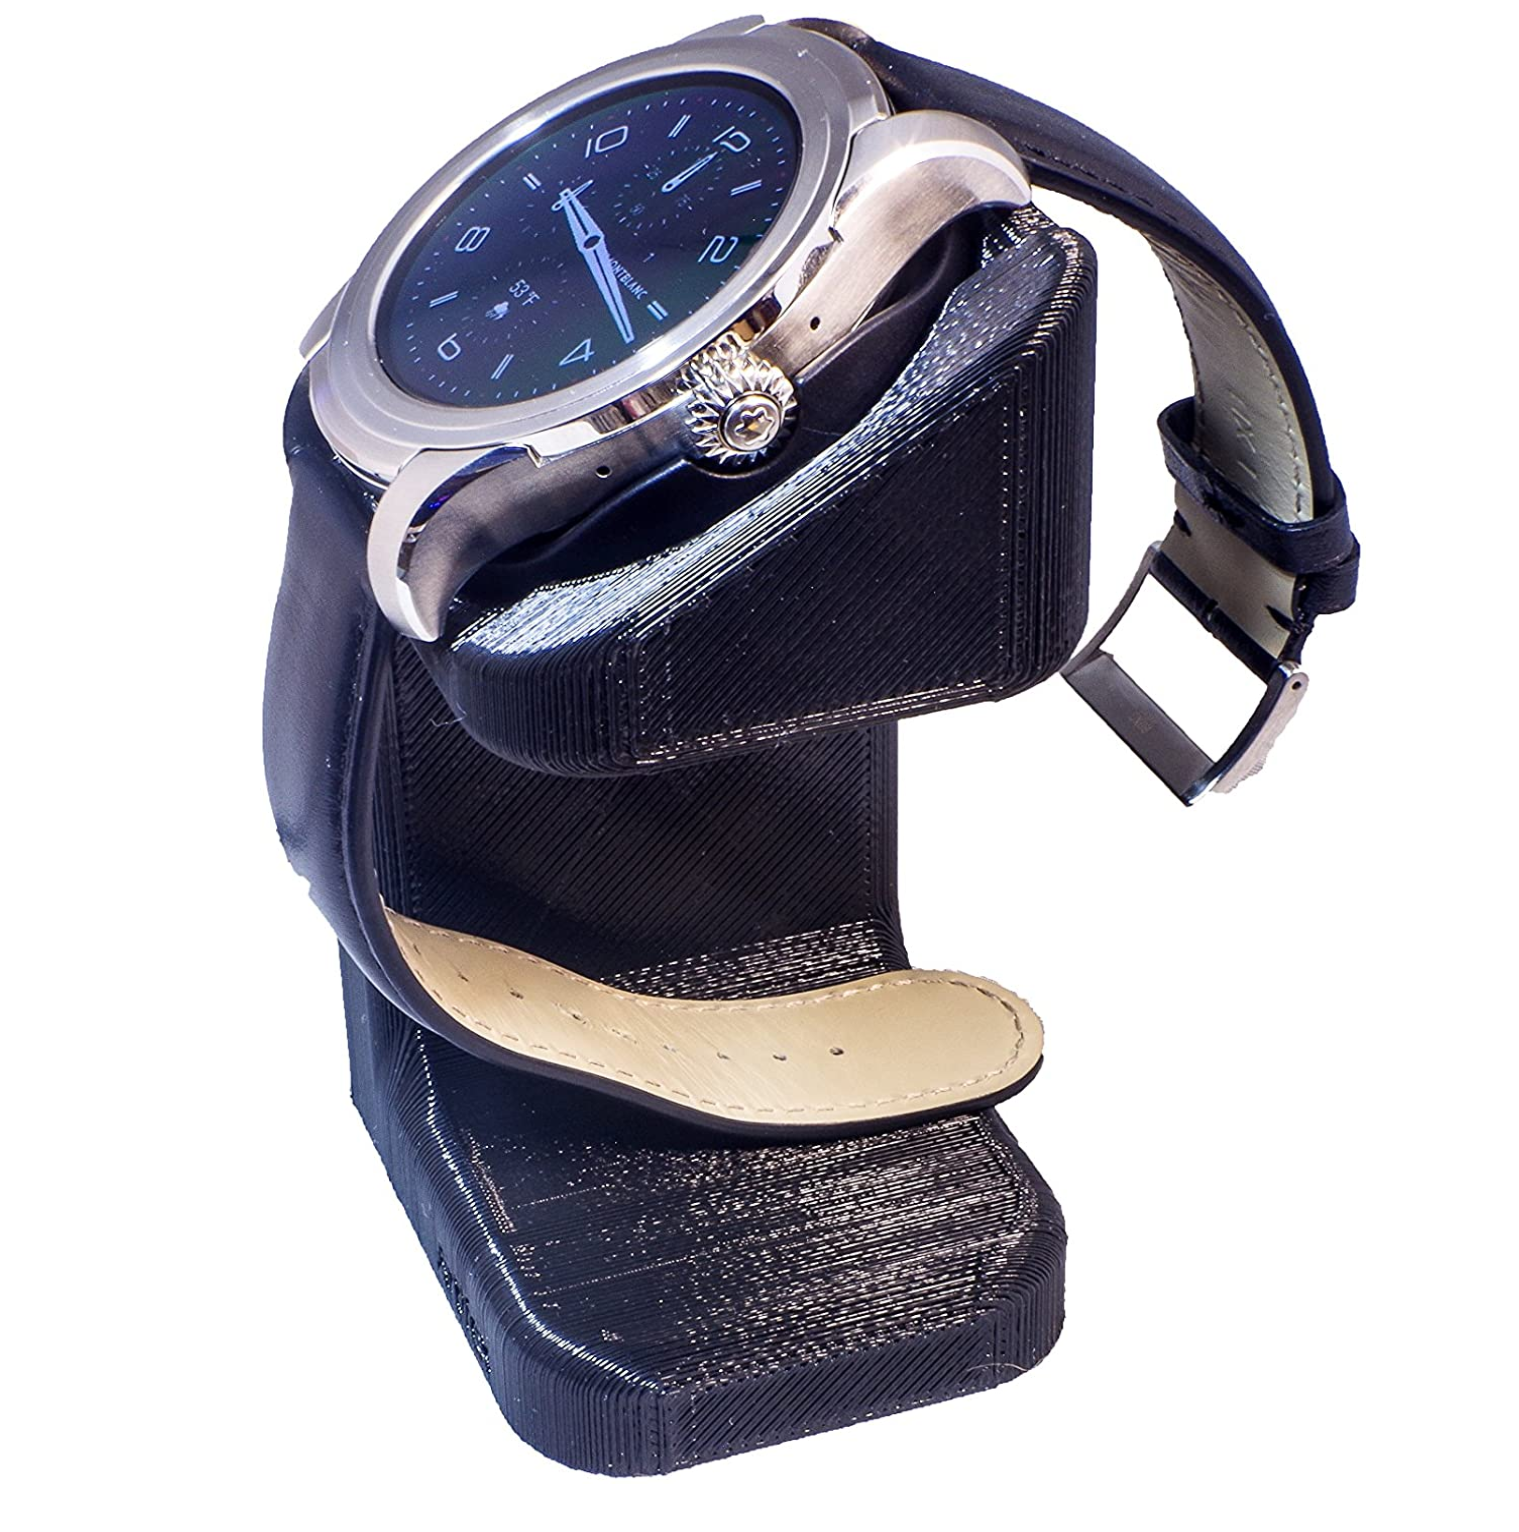 Artifex Design Stand Configured for MontBlanc Summit Smart Watch Gen 1 ONLY - Artifex Design 3D